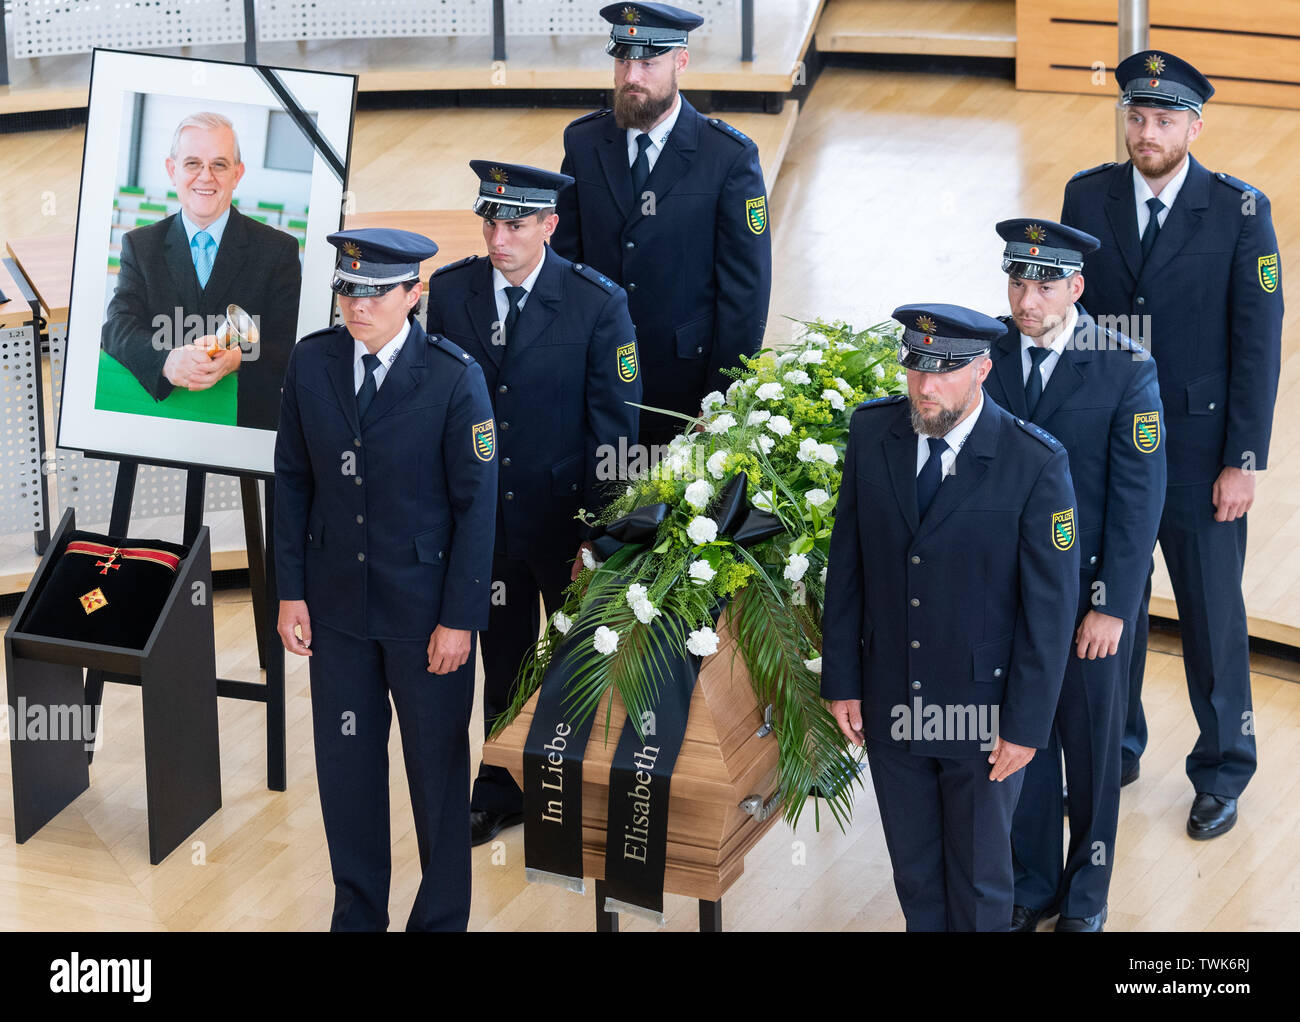 Dresde, Allemagne. 21 Juin, 2019. Les policiers sont debout à côté de son cercueil et un portrait dans la salle plénière du parlement de l'état Saxon avant le début de la loi sur les funérailles de l'ancien président du Parlement européen, l'état Saxon Erich Iltgen. L'homme politique de la CDU, qui est mort il y a une semaine et demie à l'âge de 78 ans, est honoré d'un acte de l'état au Parlement - la première jamais. Crédit : Robert Michael/dpa-Zentralbild/dpa/Alamy Live News Banque D'Images